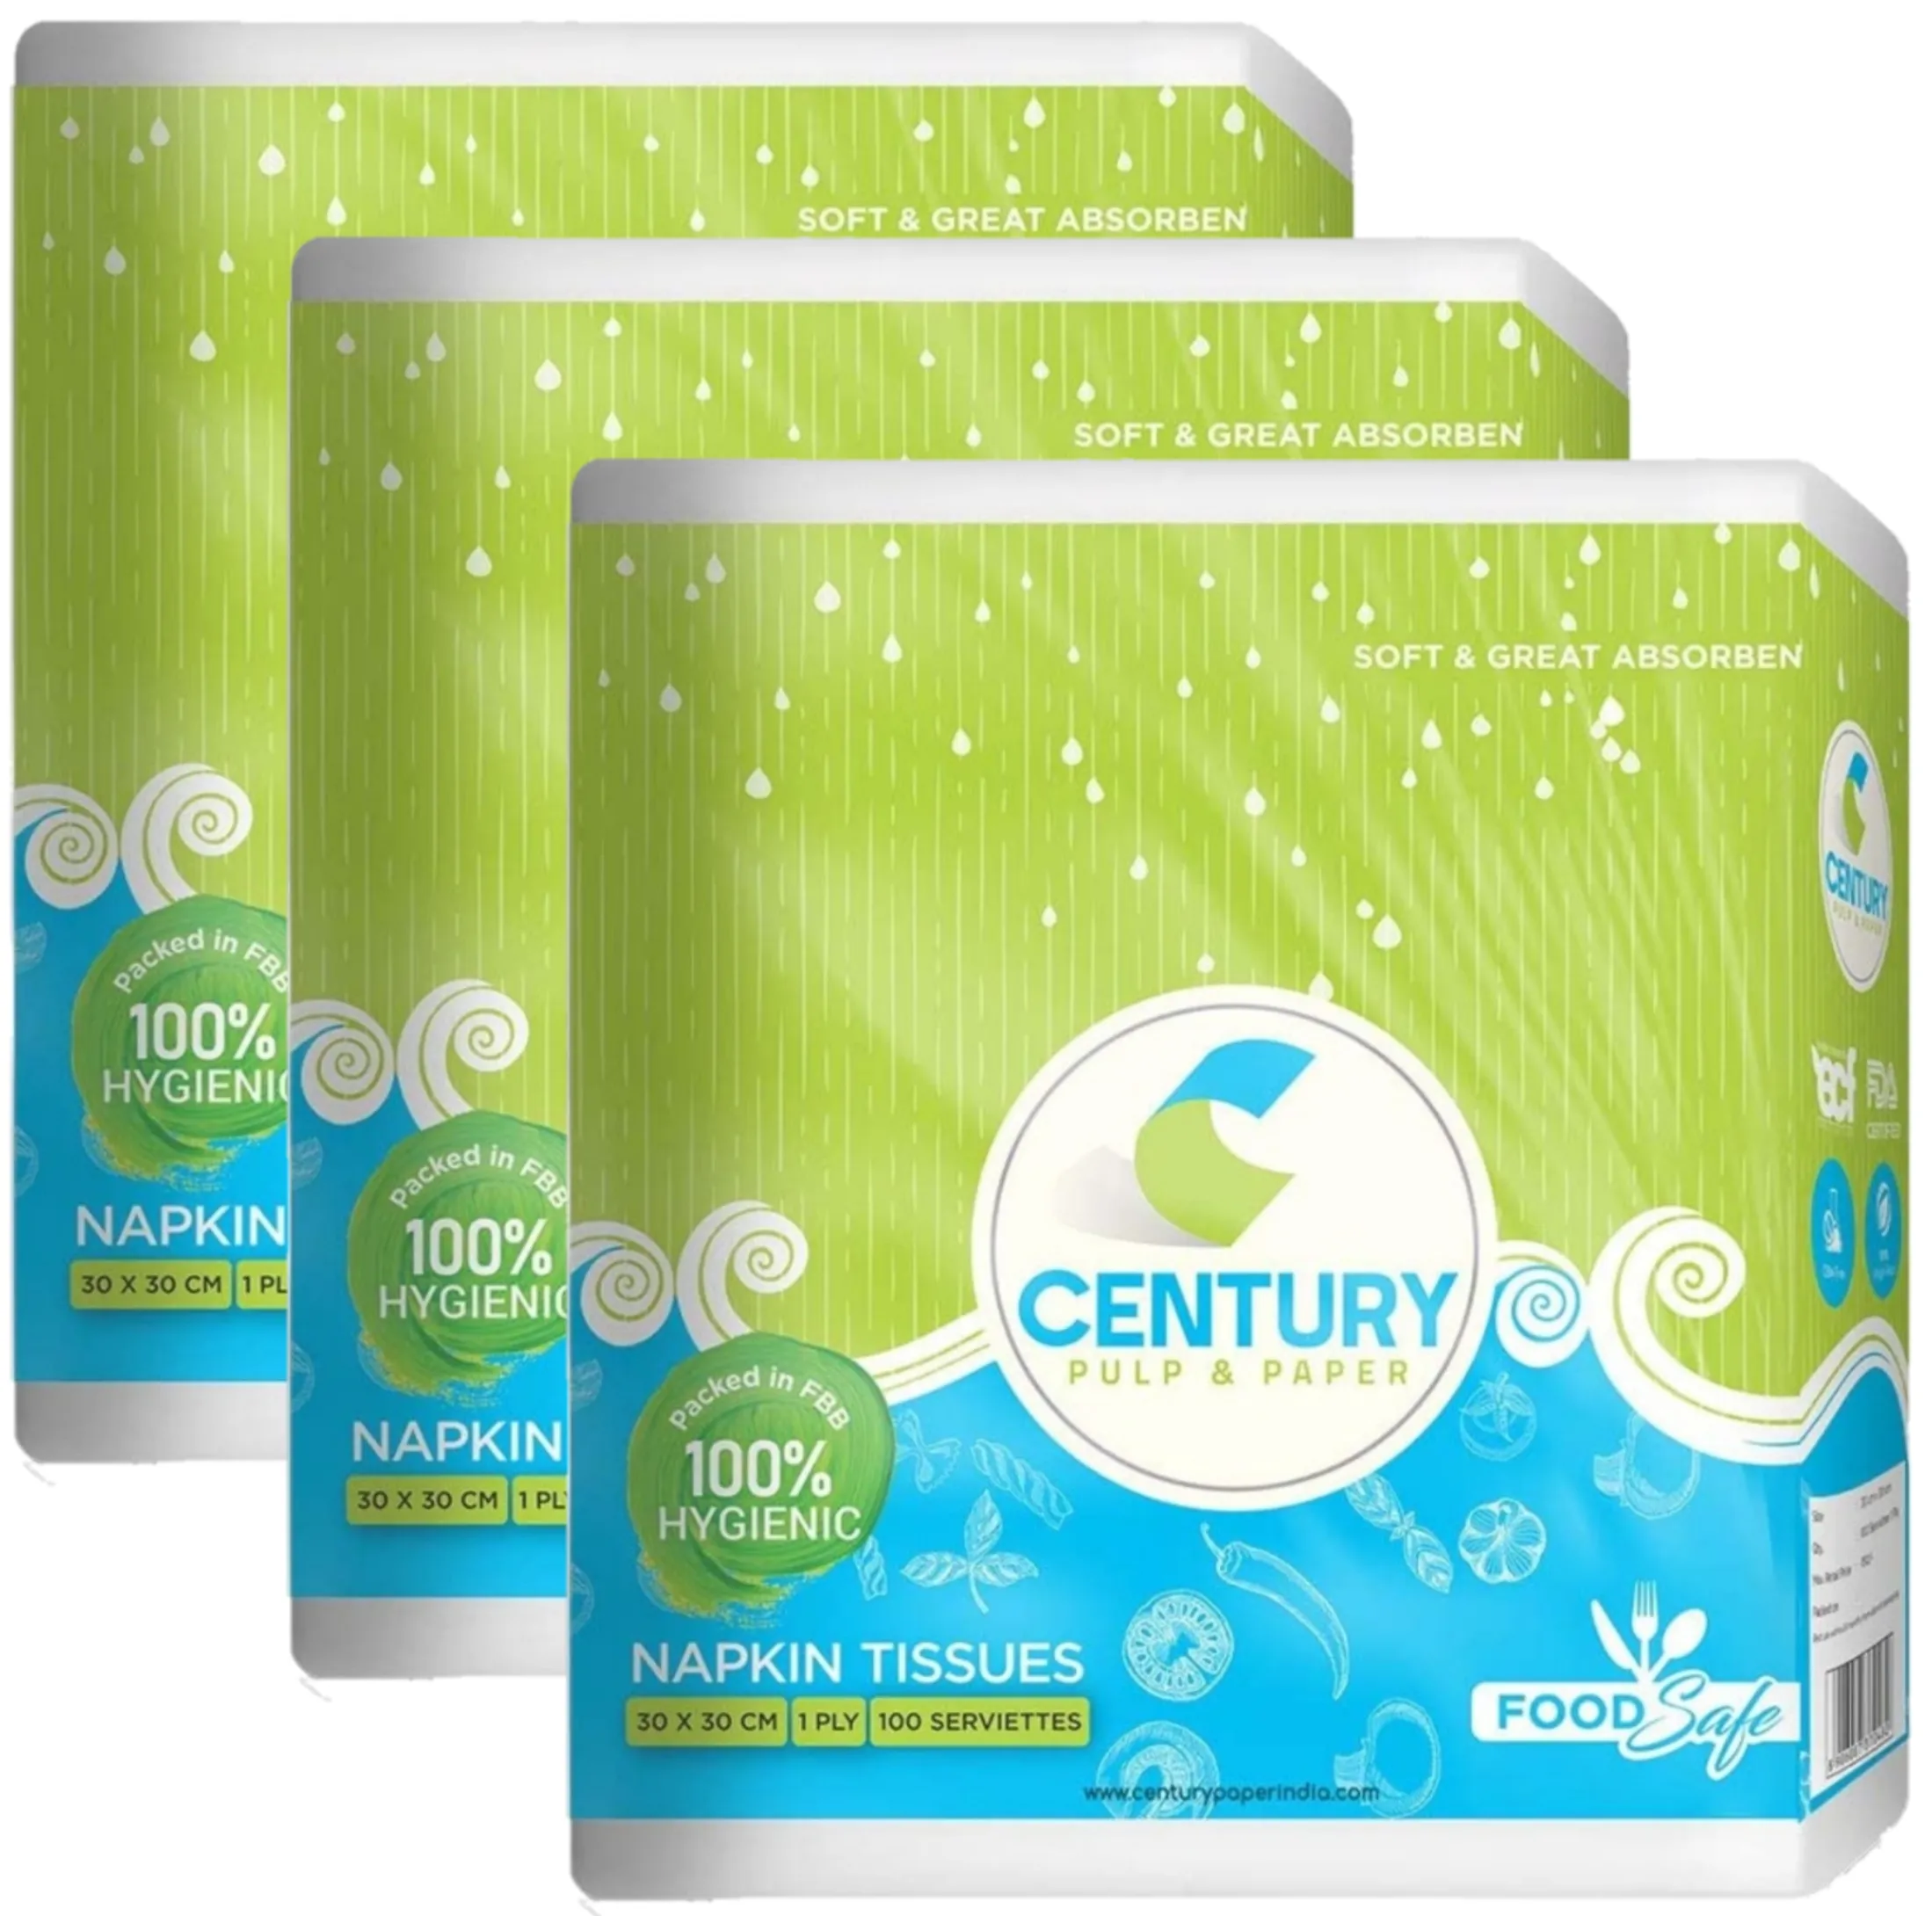 Century Napkin Tissue (30 X 30 cm , 100 Pulls / Serviettes) - Pack Of 3